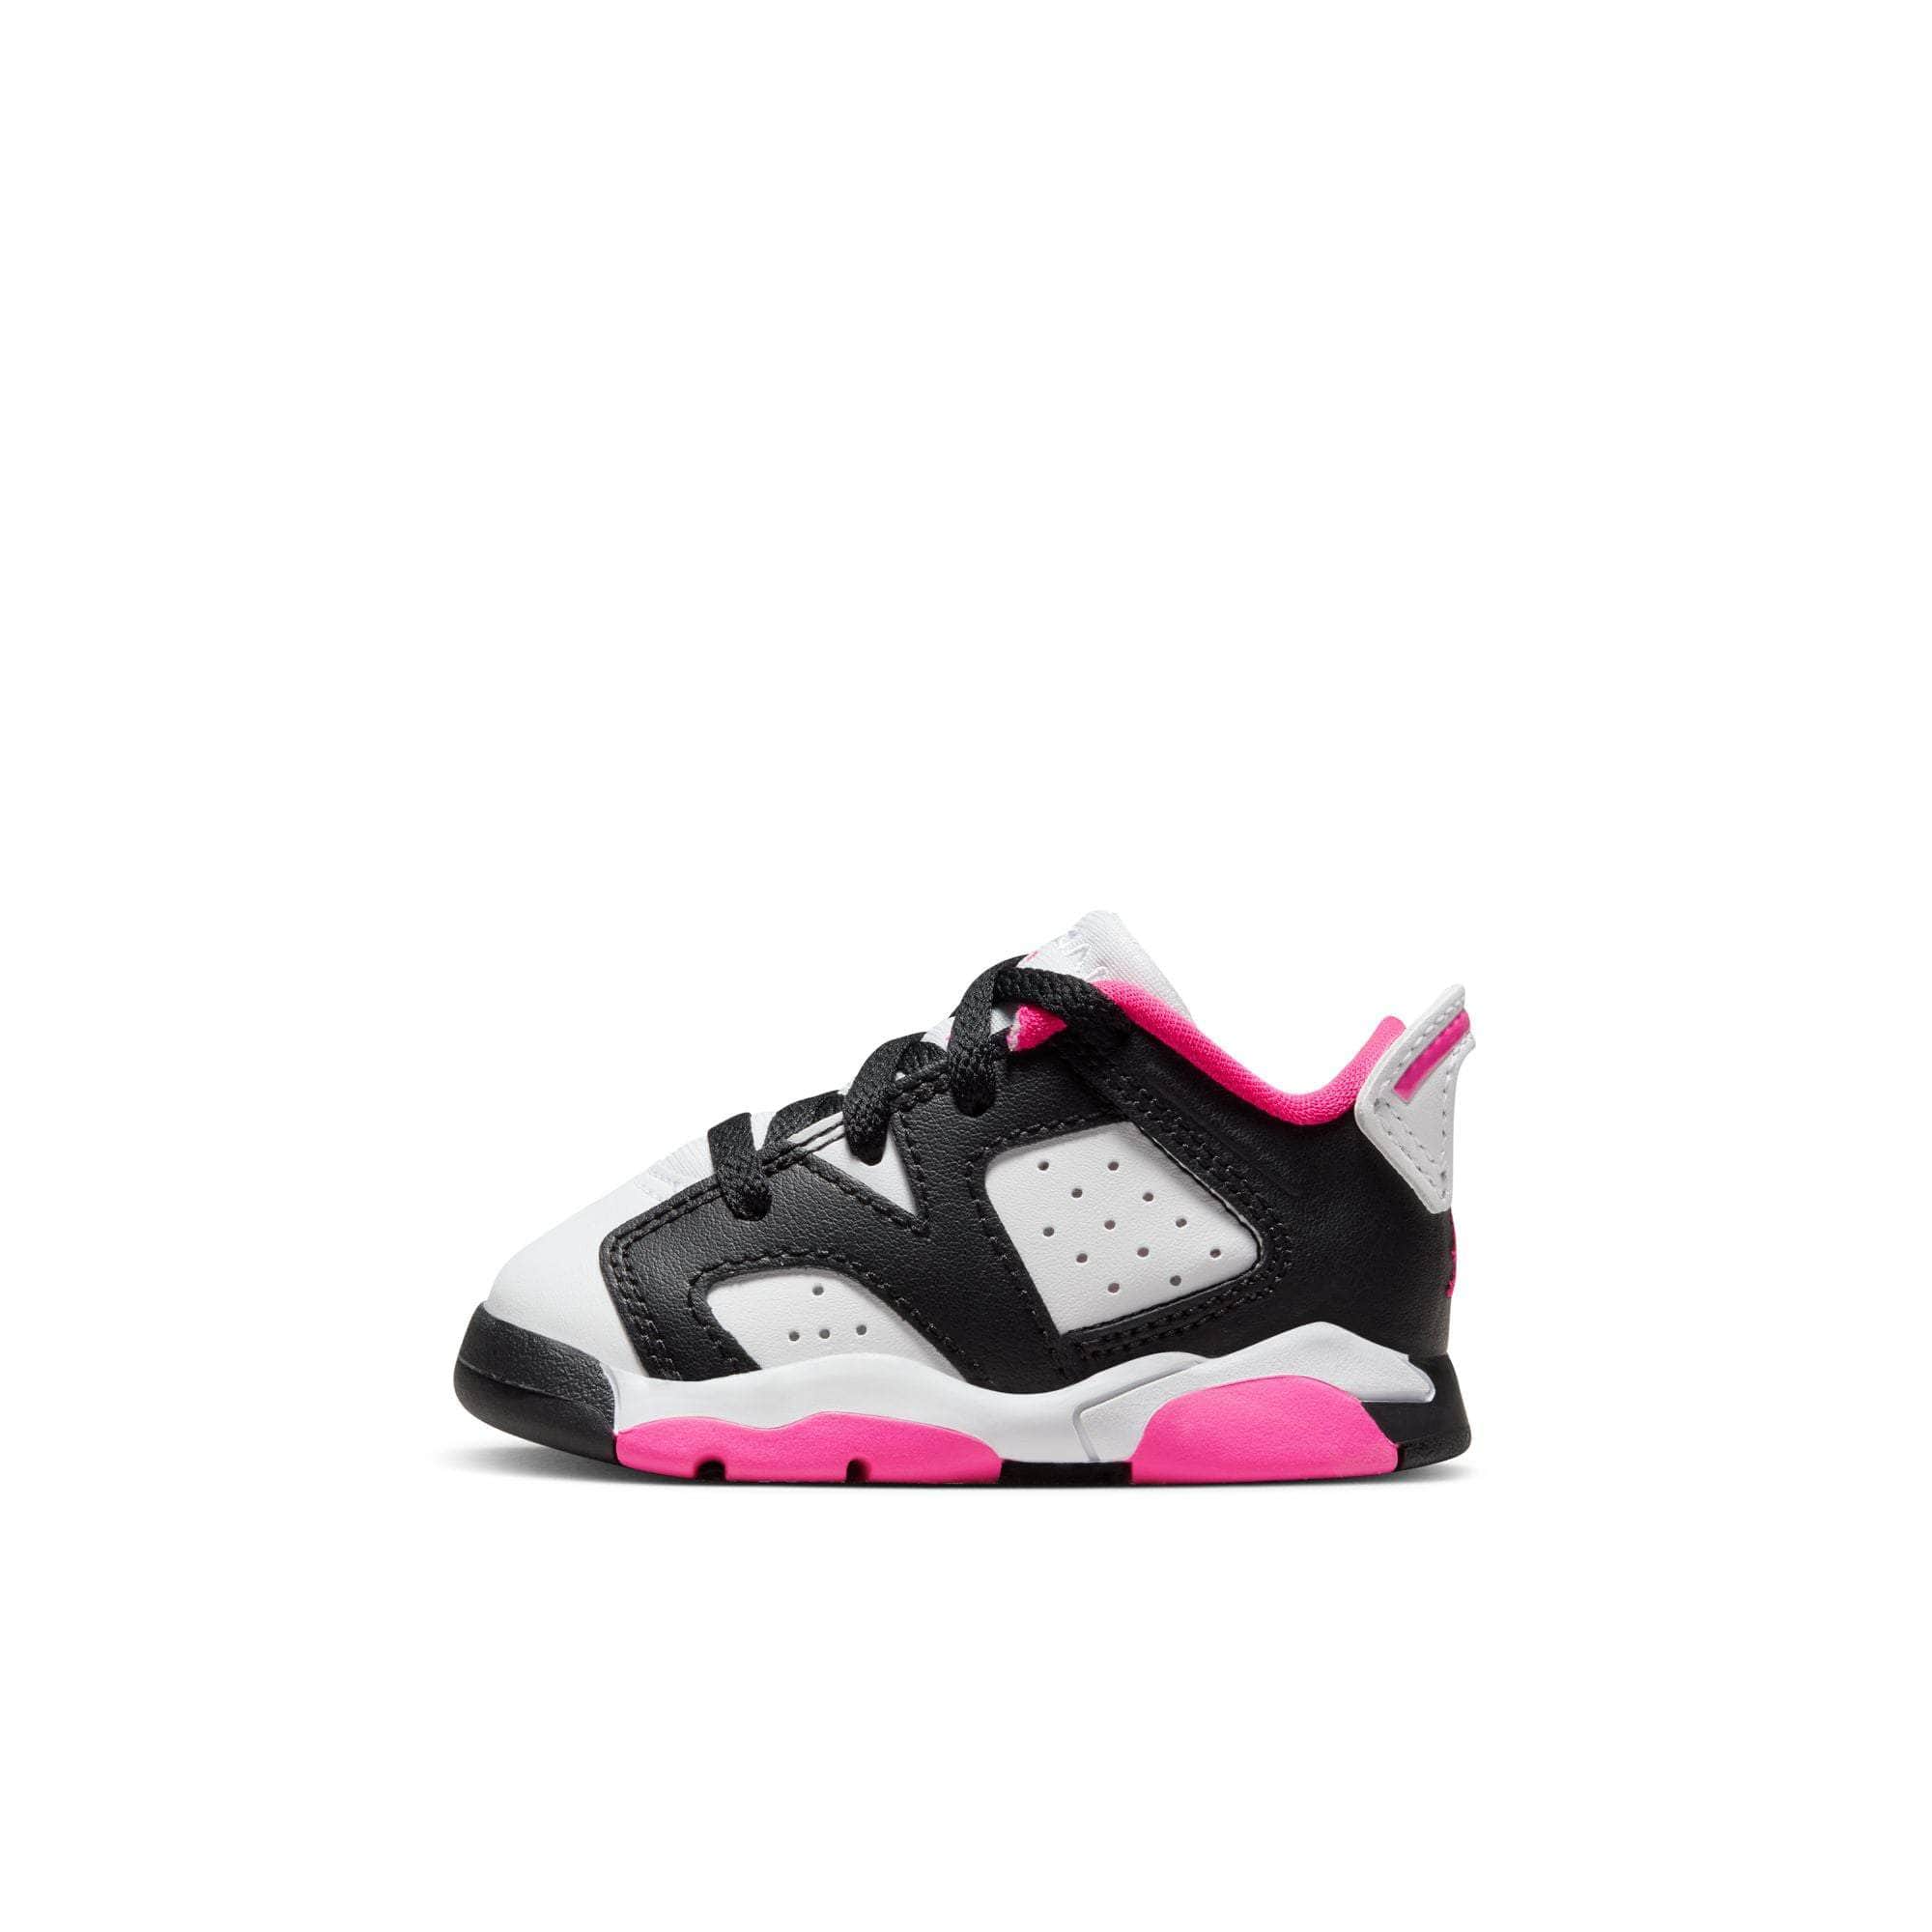 Air Jordan FOOTWEAR Air Jordan 6 Retro Low "Fierce Pink" - Toddler's TD